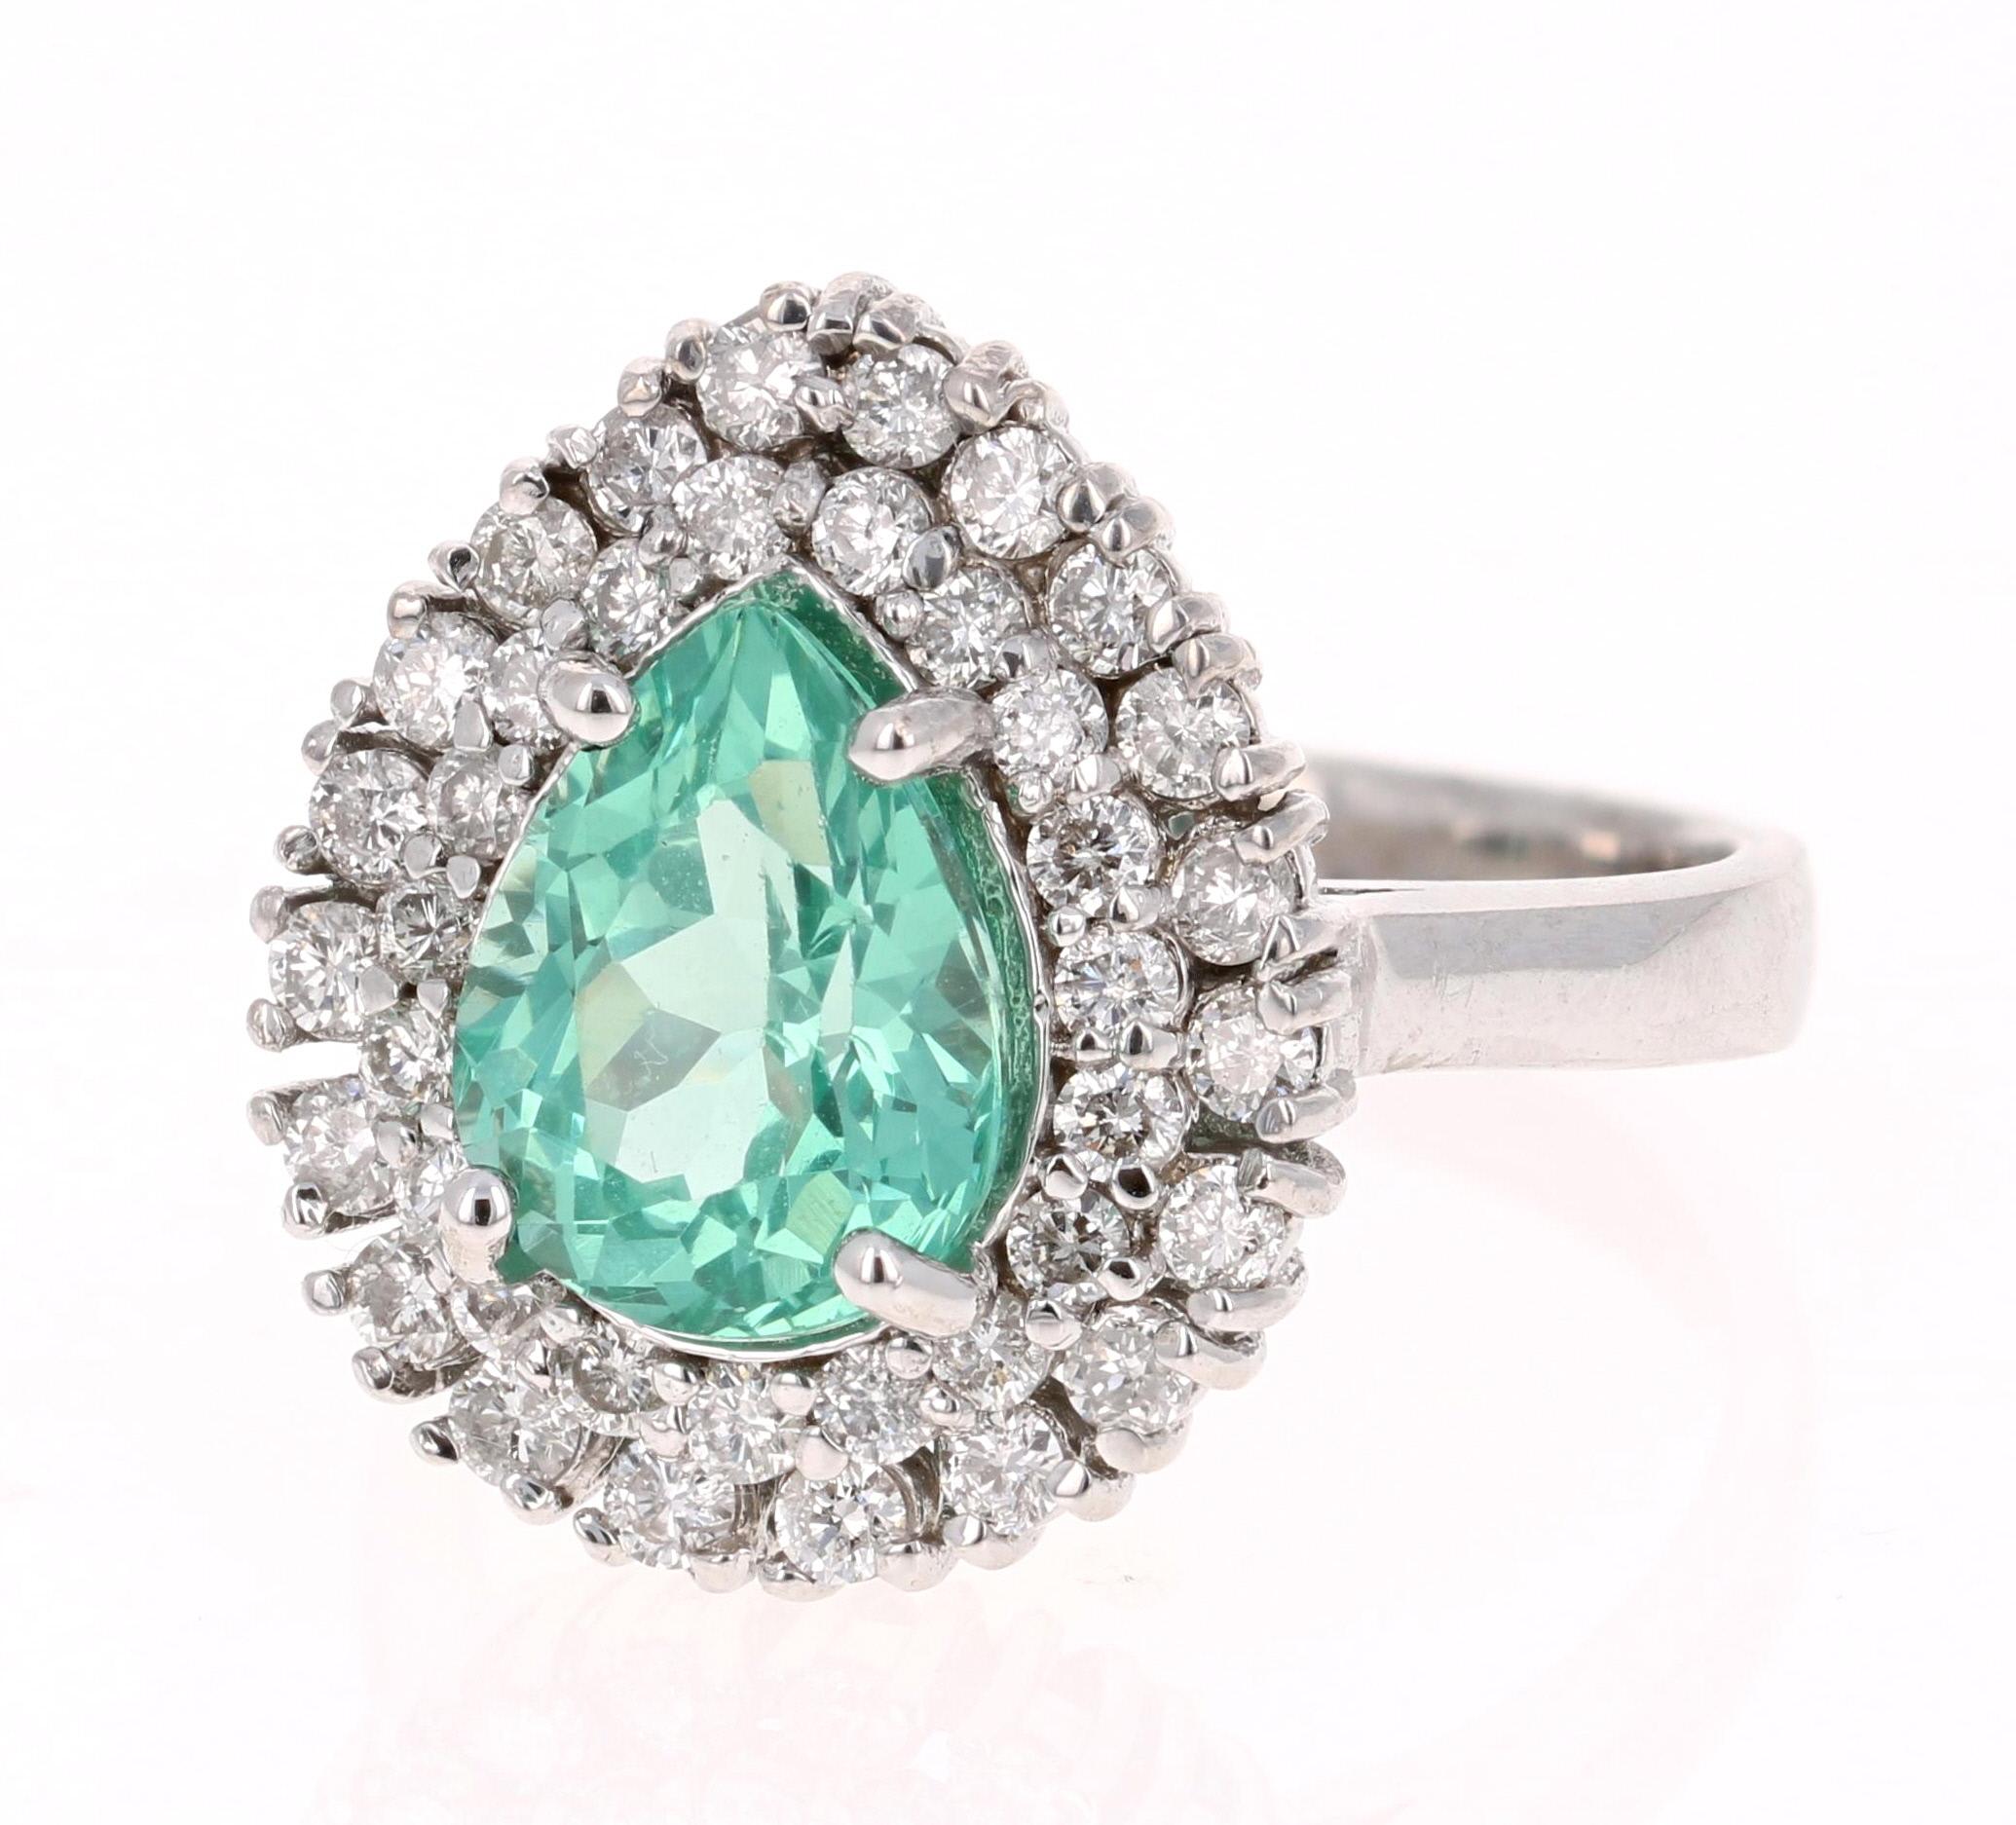 Dieser atemberaubende Ring aus Apatit und Diamanten lässt sich leicht in einen einzigartigen und stilvollen Verlobungsring für Ihre besondere Person verwandeln!  

Apatite werden an verschiedenen Orten der Welt gefunden, darunter Myanmar, Kenia,